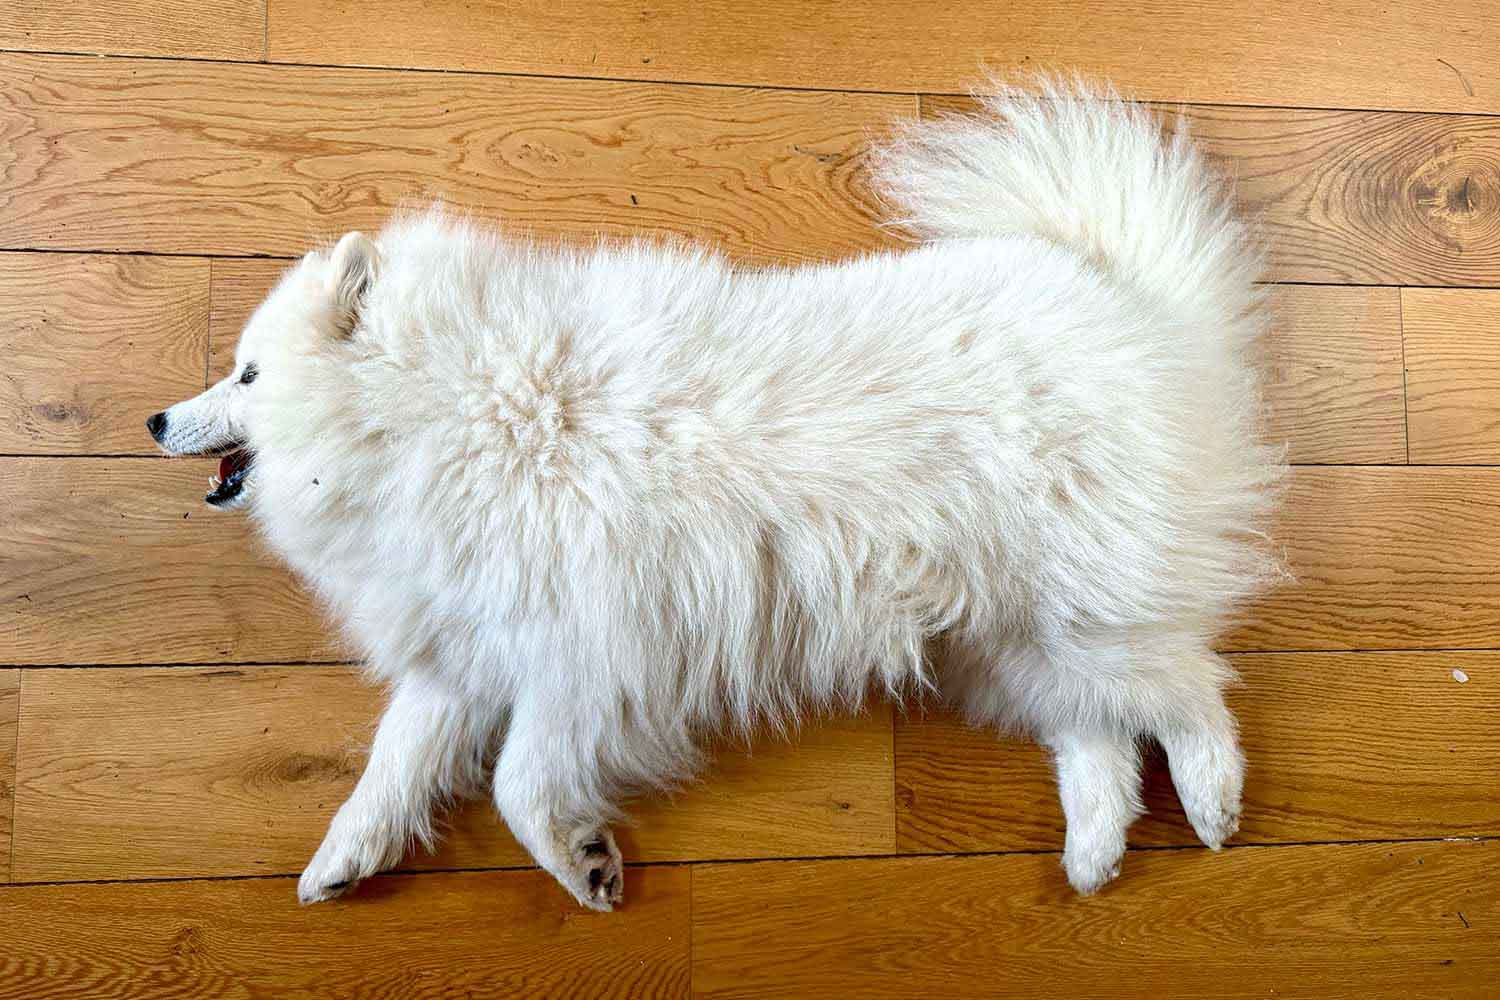 A rug. Not a dog, a rug.